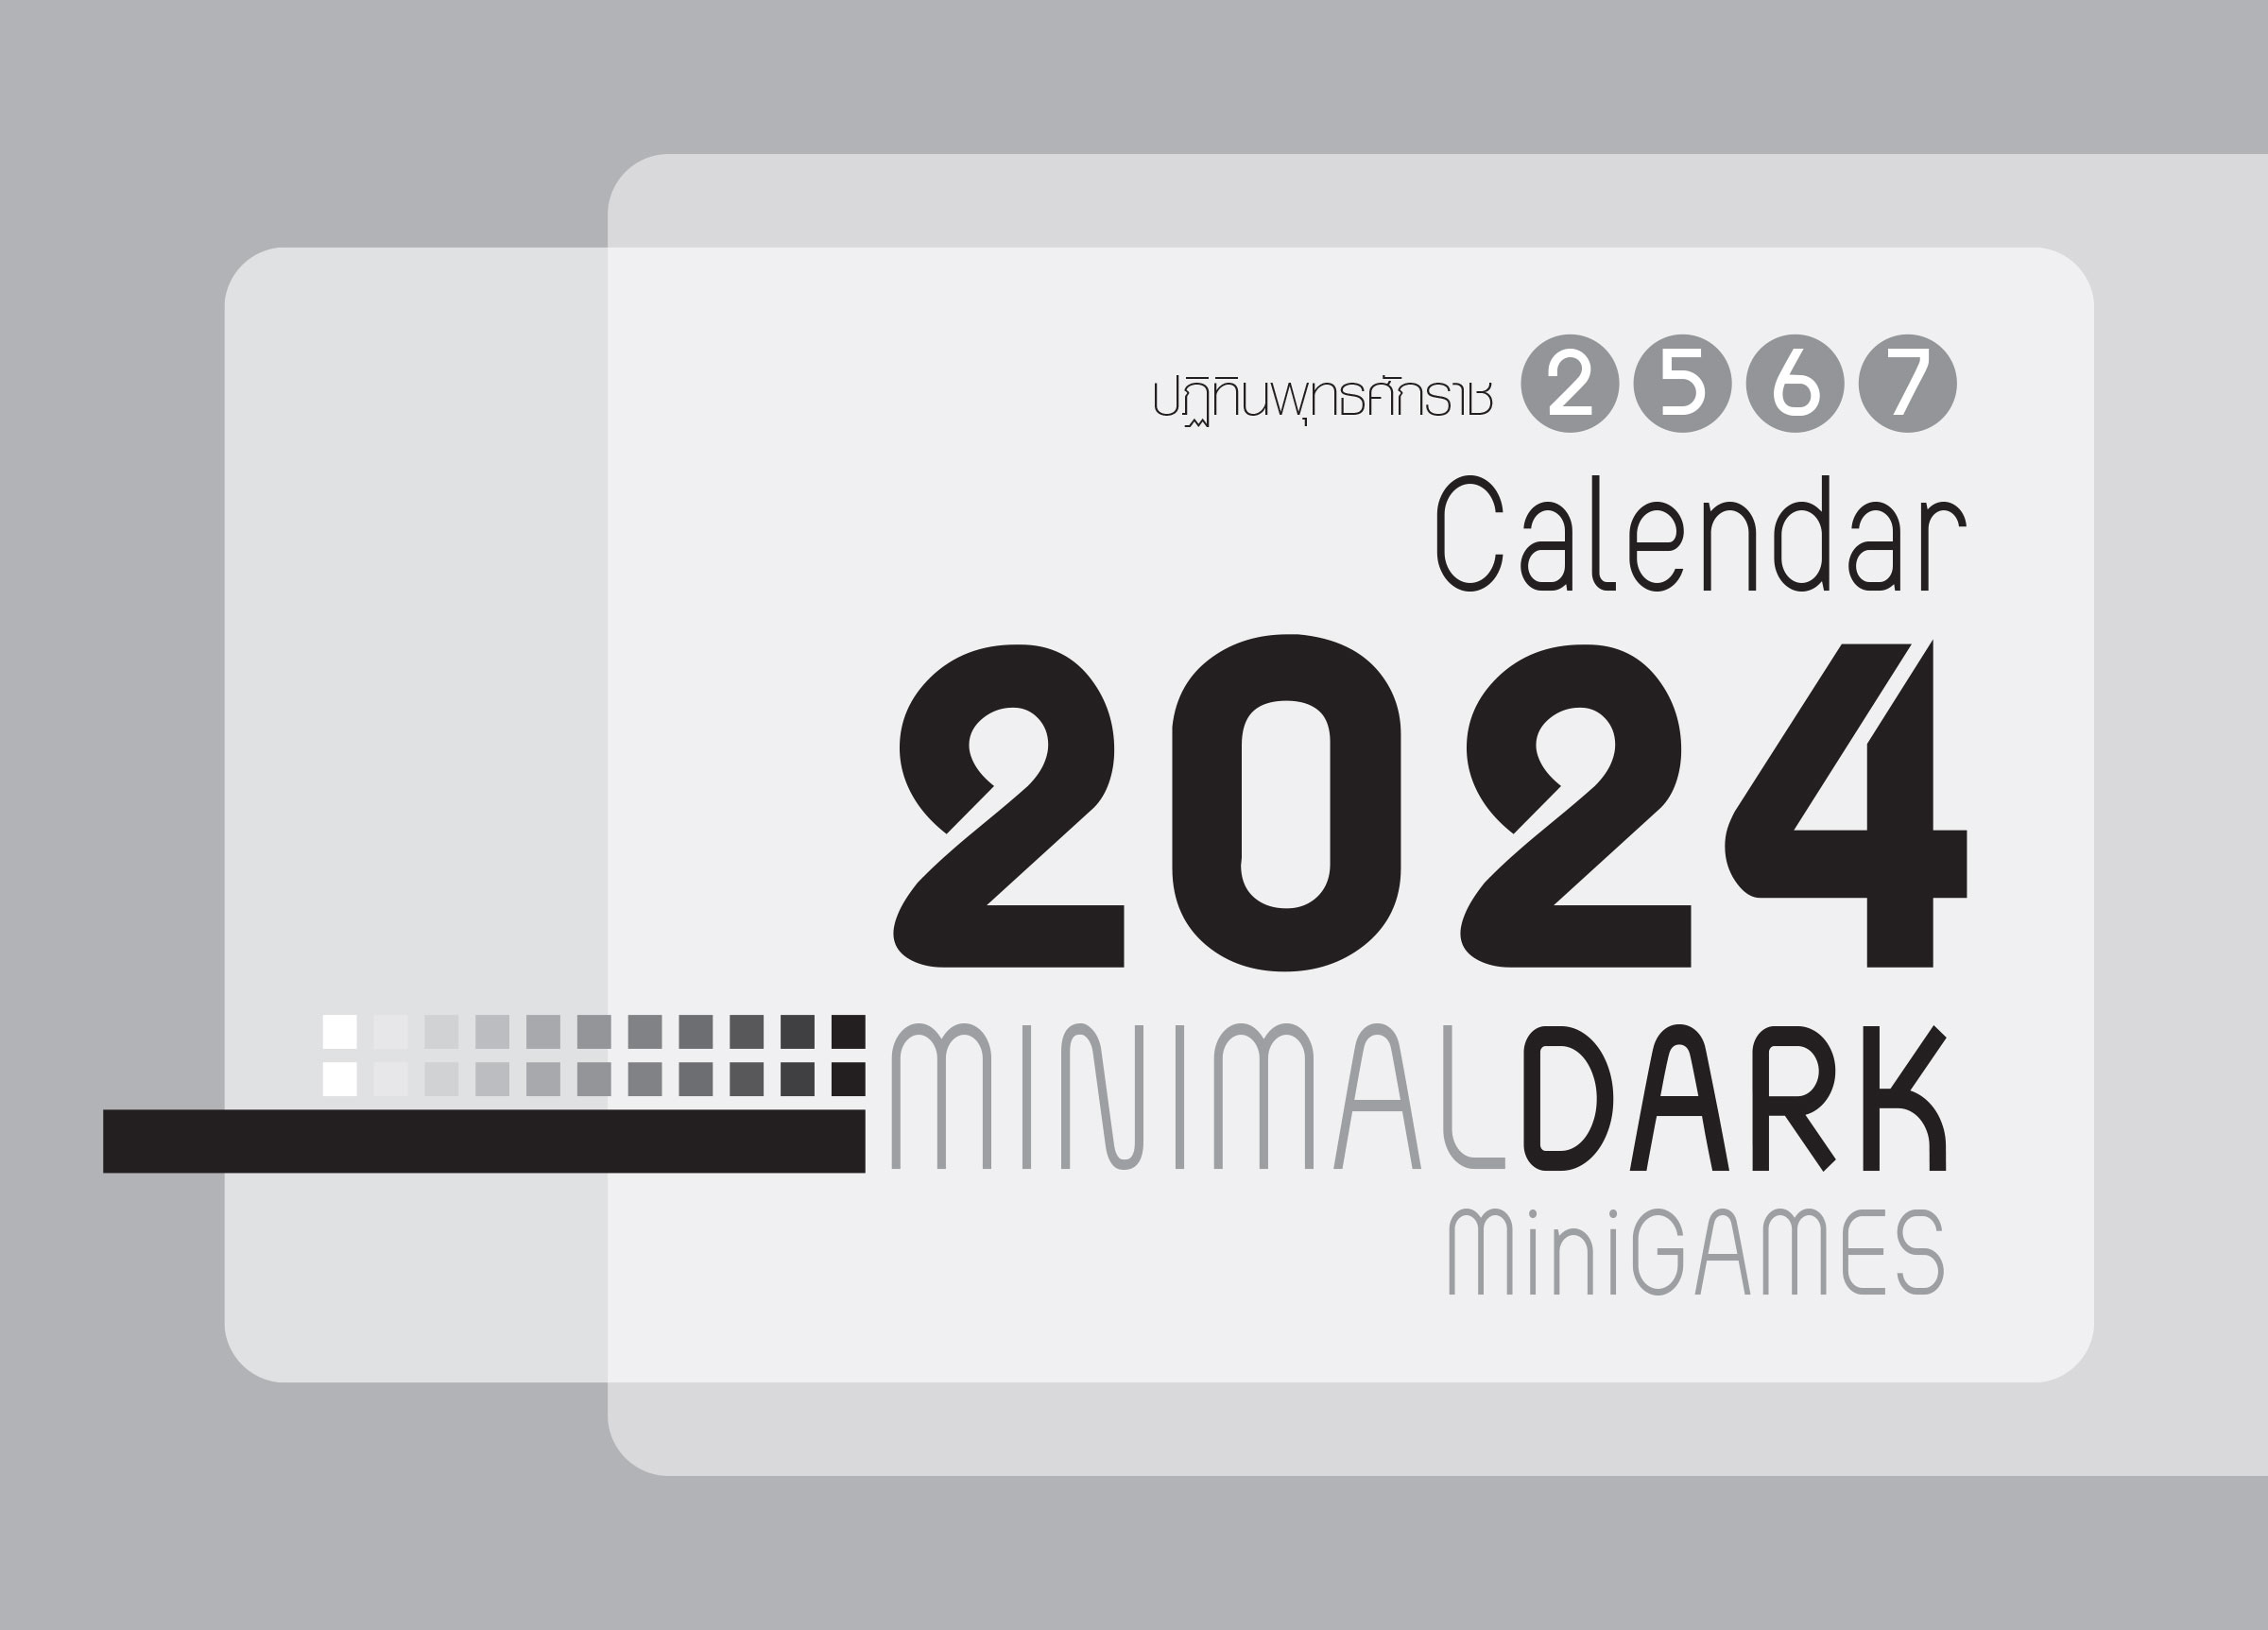 ปฏิทินตั้งโต๊ะ 2567_Minimal-Dark-Minigames